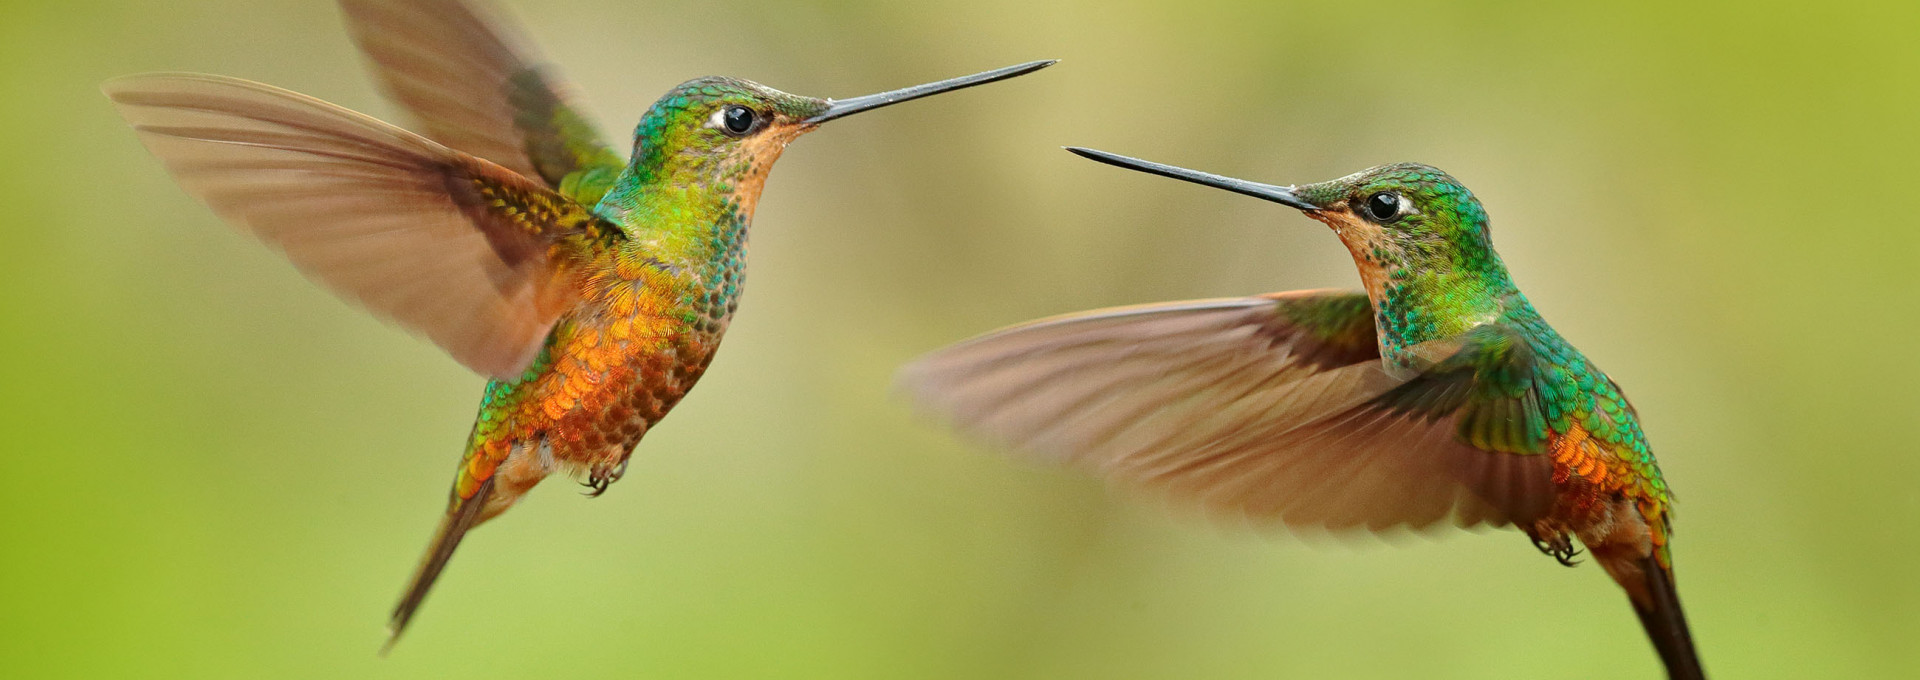 Zwei grün-gelbe Kolibris fliegen in der Luft vor grünem Hintergrund